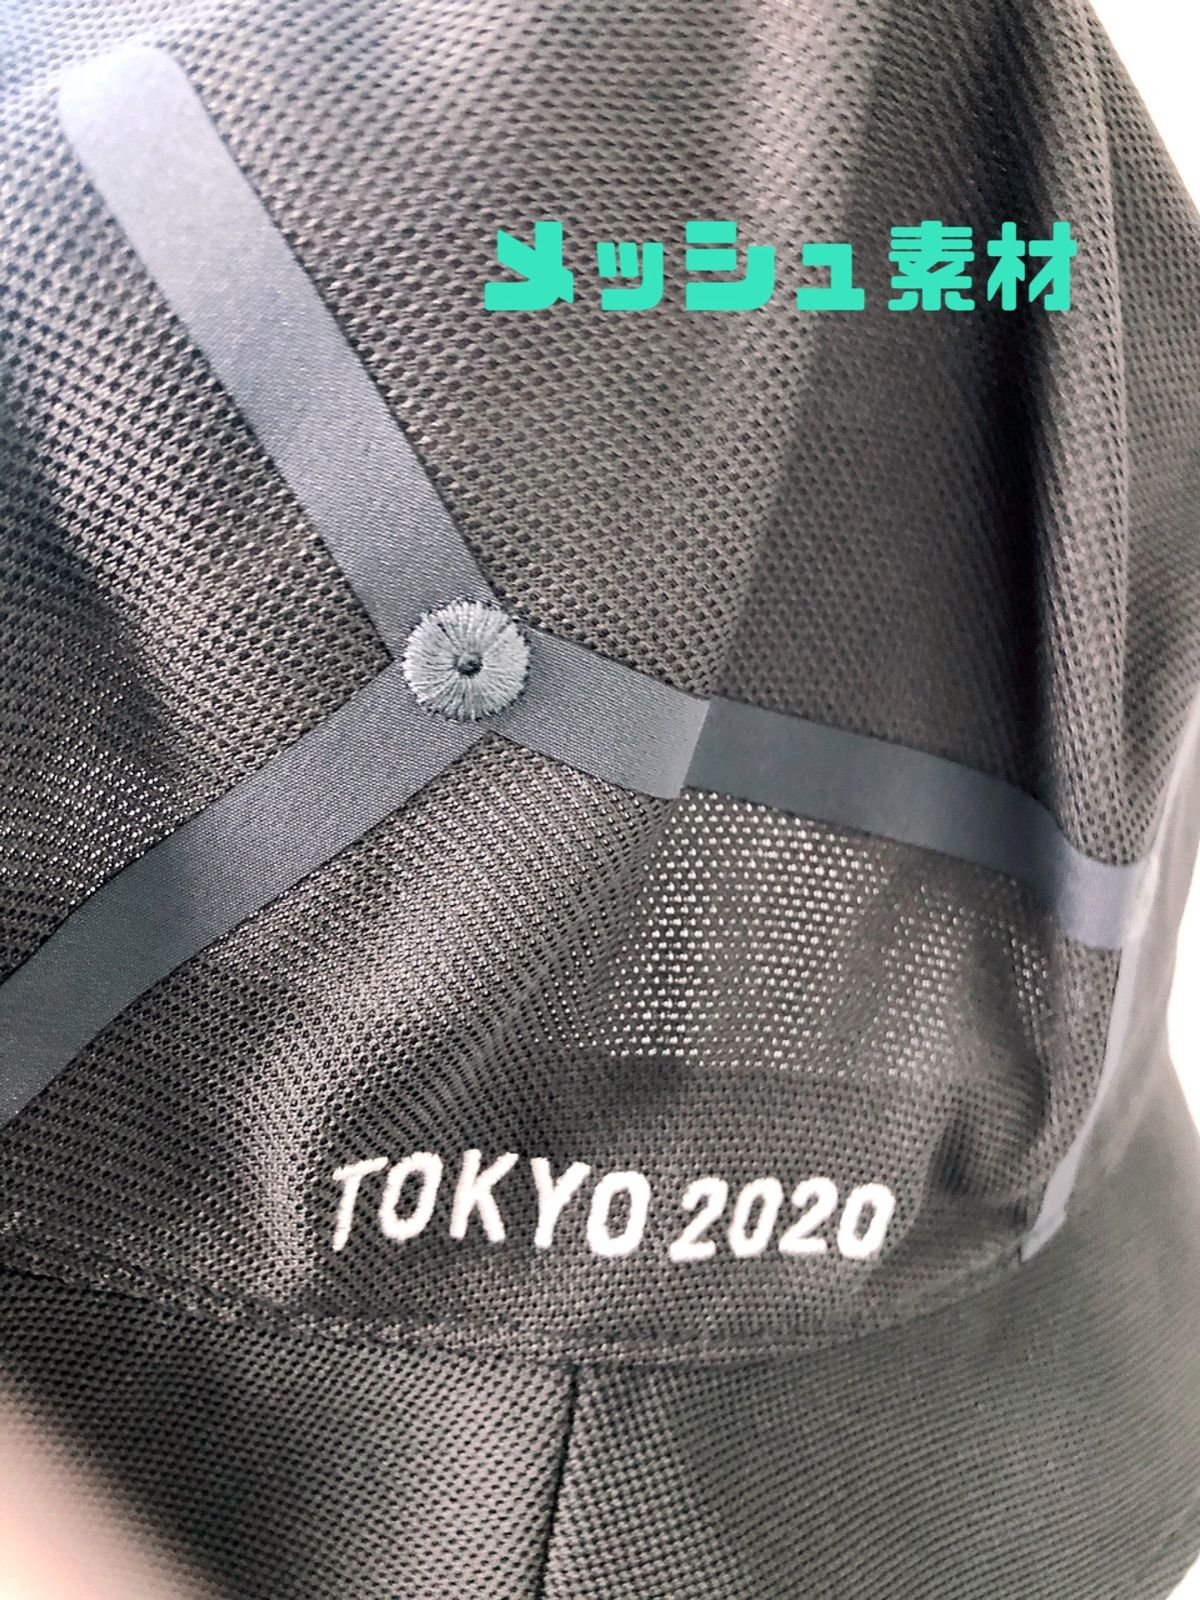 新品未使用 タグ付き アシックス Mサイズ 東京2020 オリンピック